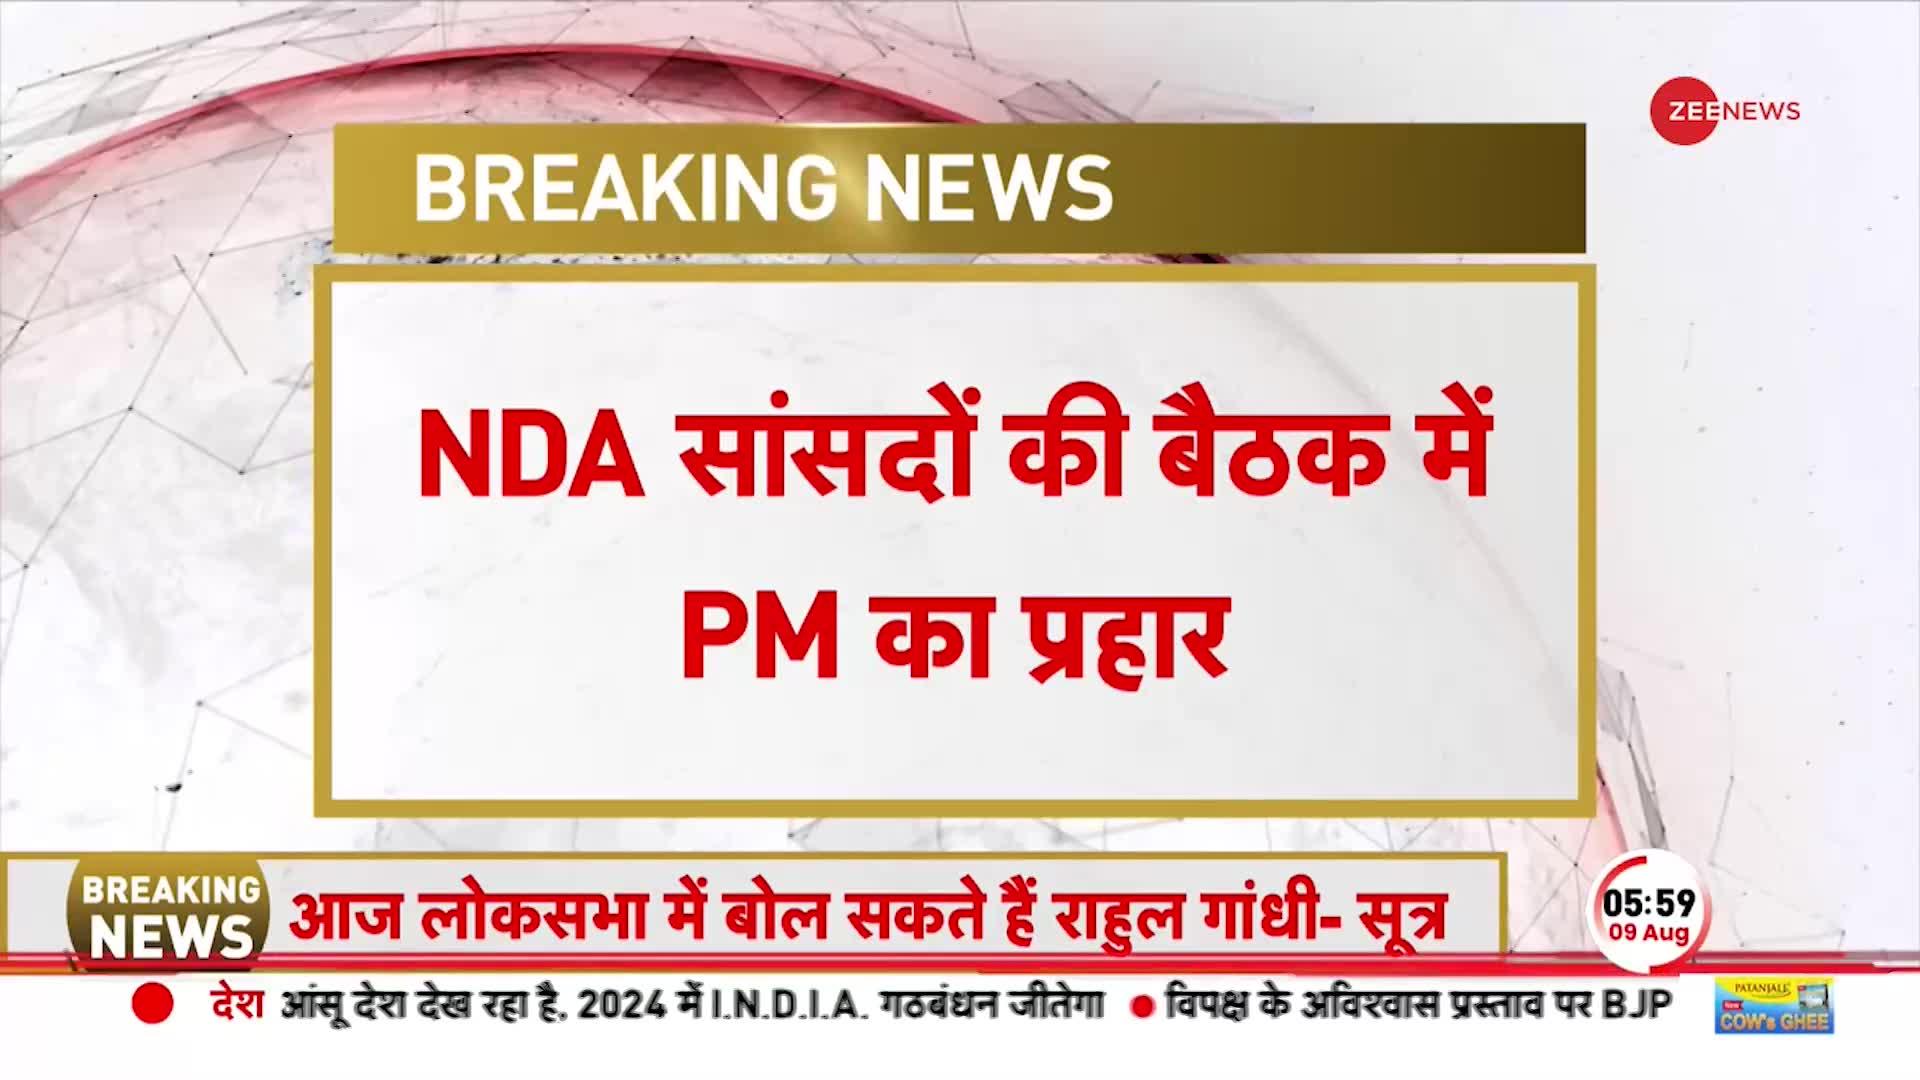 NDA सांसदों की बैठक में उद्धव ठाकरे पर PM मोदी का हमला, गठबंधन तोड़ने का आरोप लगाया